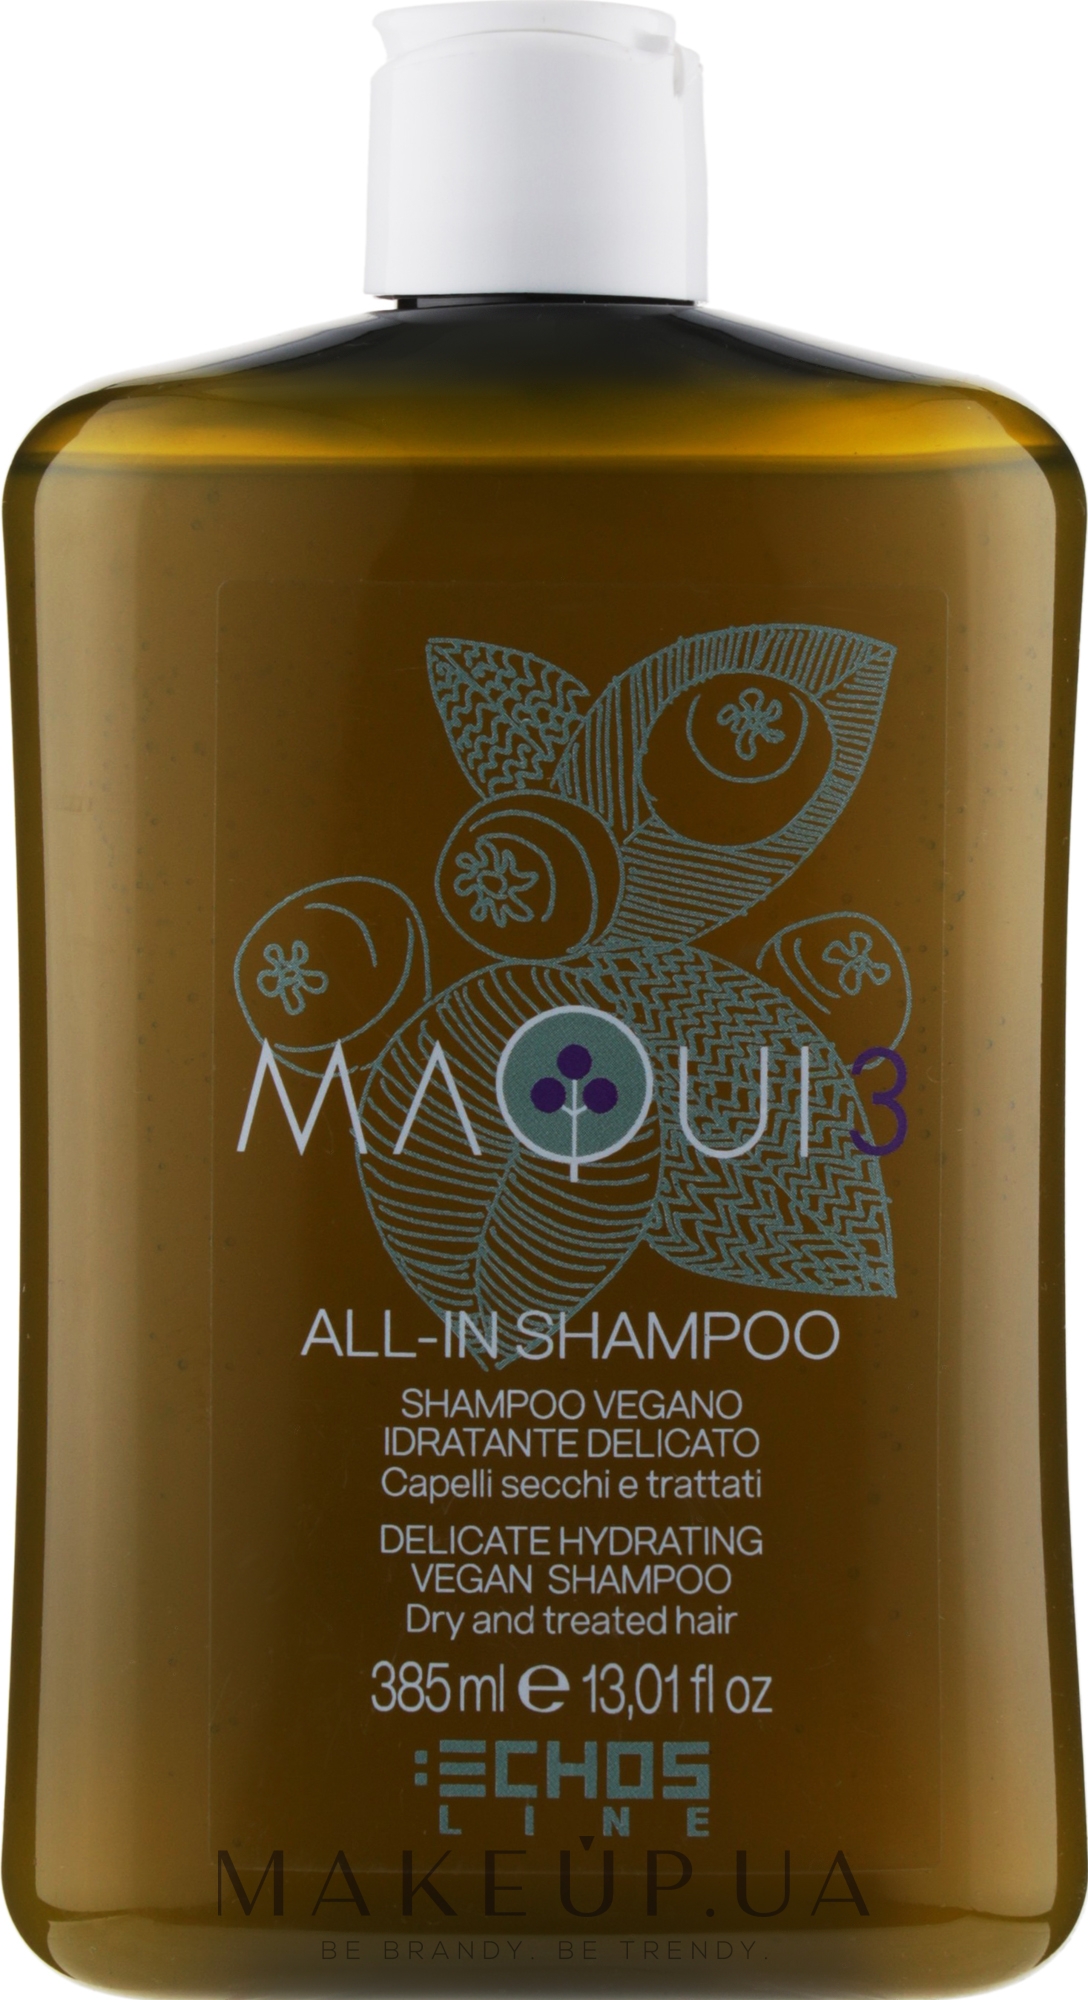 Деликатный увлажняющий шампунь - Echosline Maqui 3 Delicate Hydrating Vegan Shampoo — фото 385ml